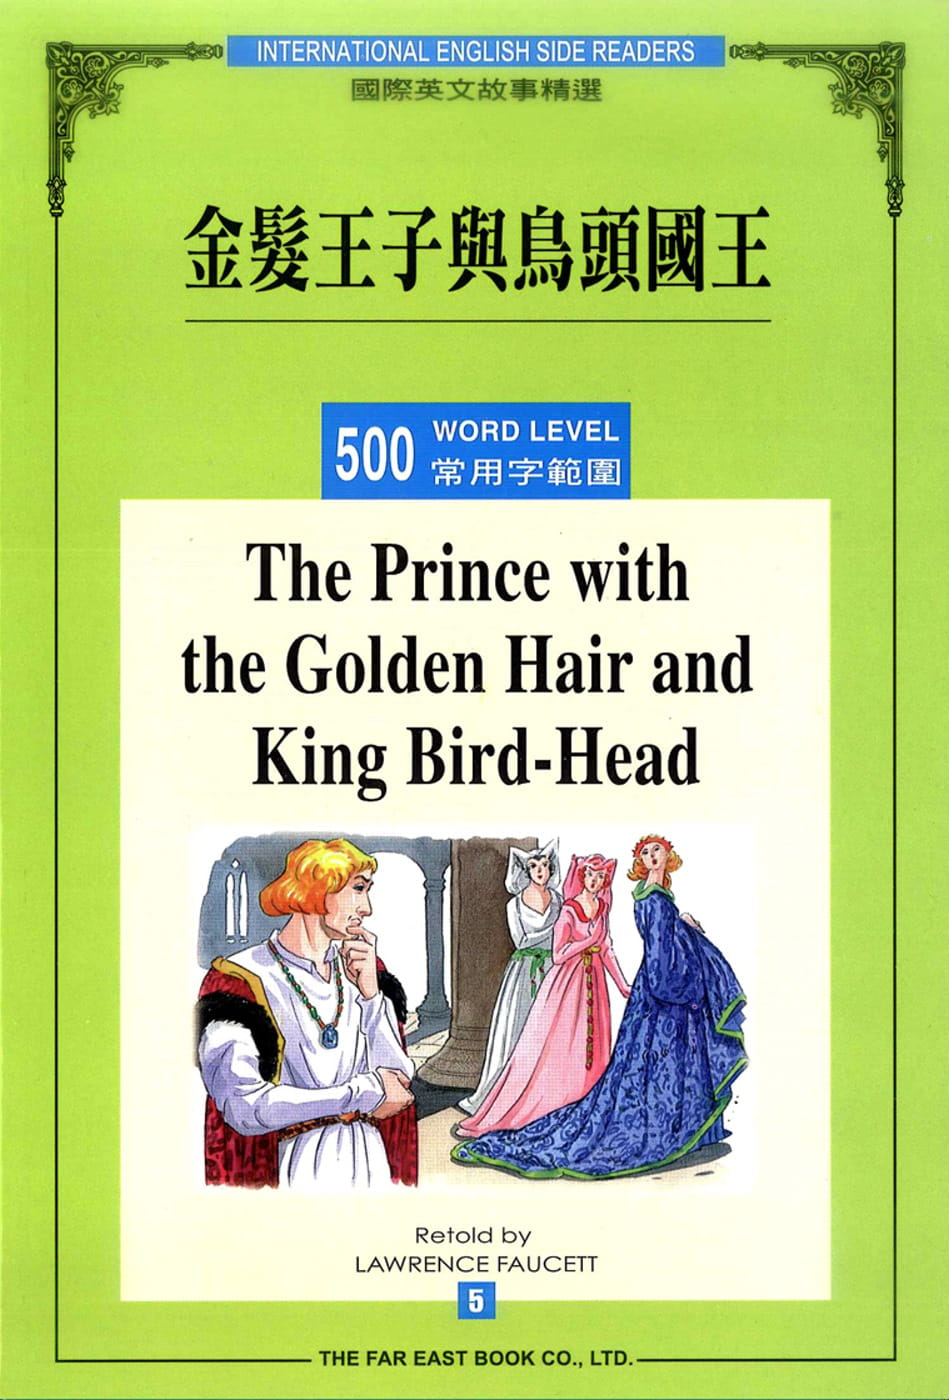 金髮王子與鳥頭國王